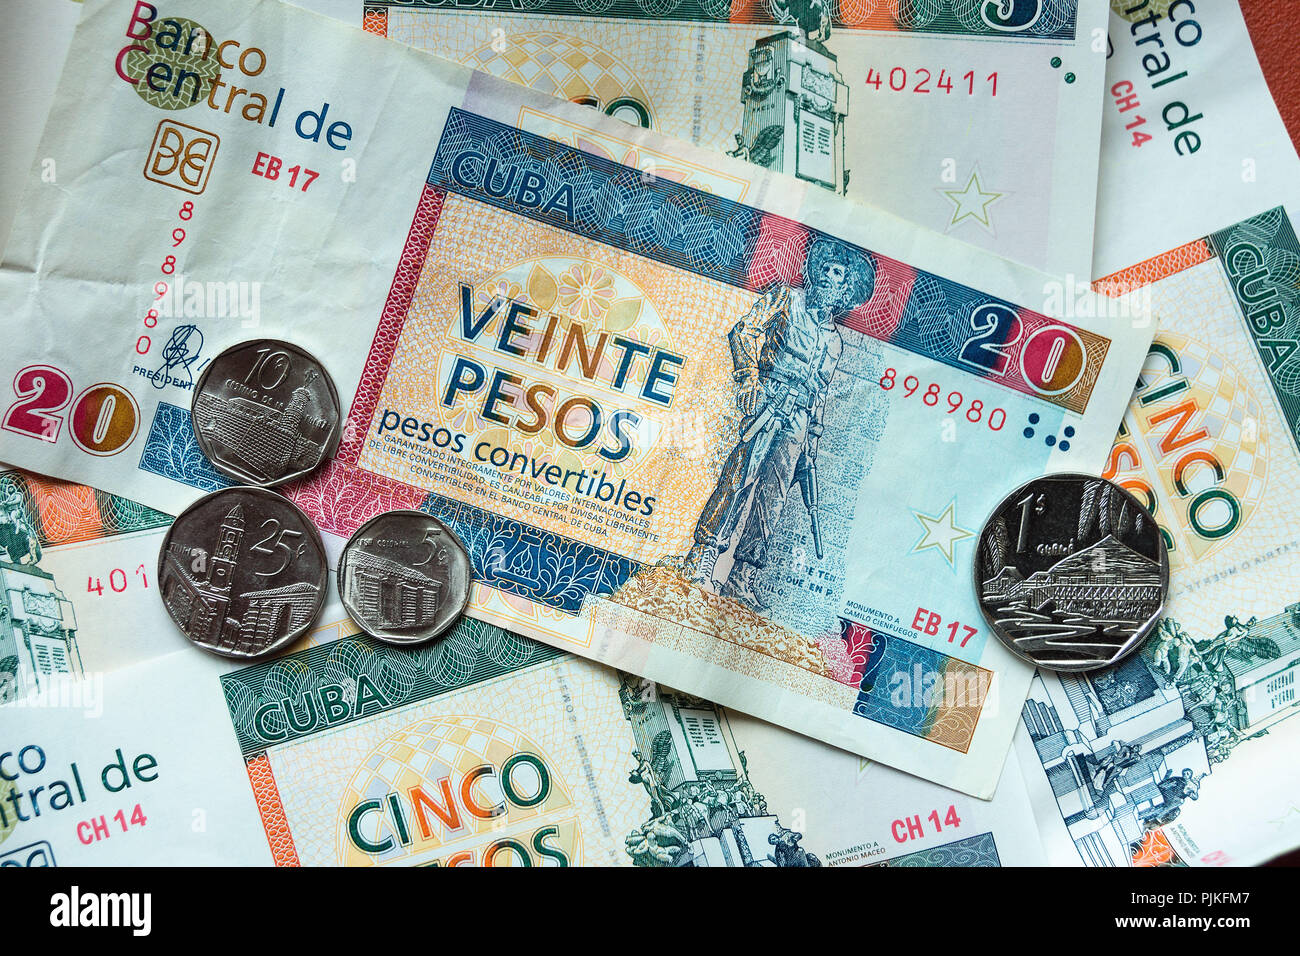 Cuba currency immagini e fotografie stock ad alta risoluzione - Alamy